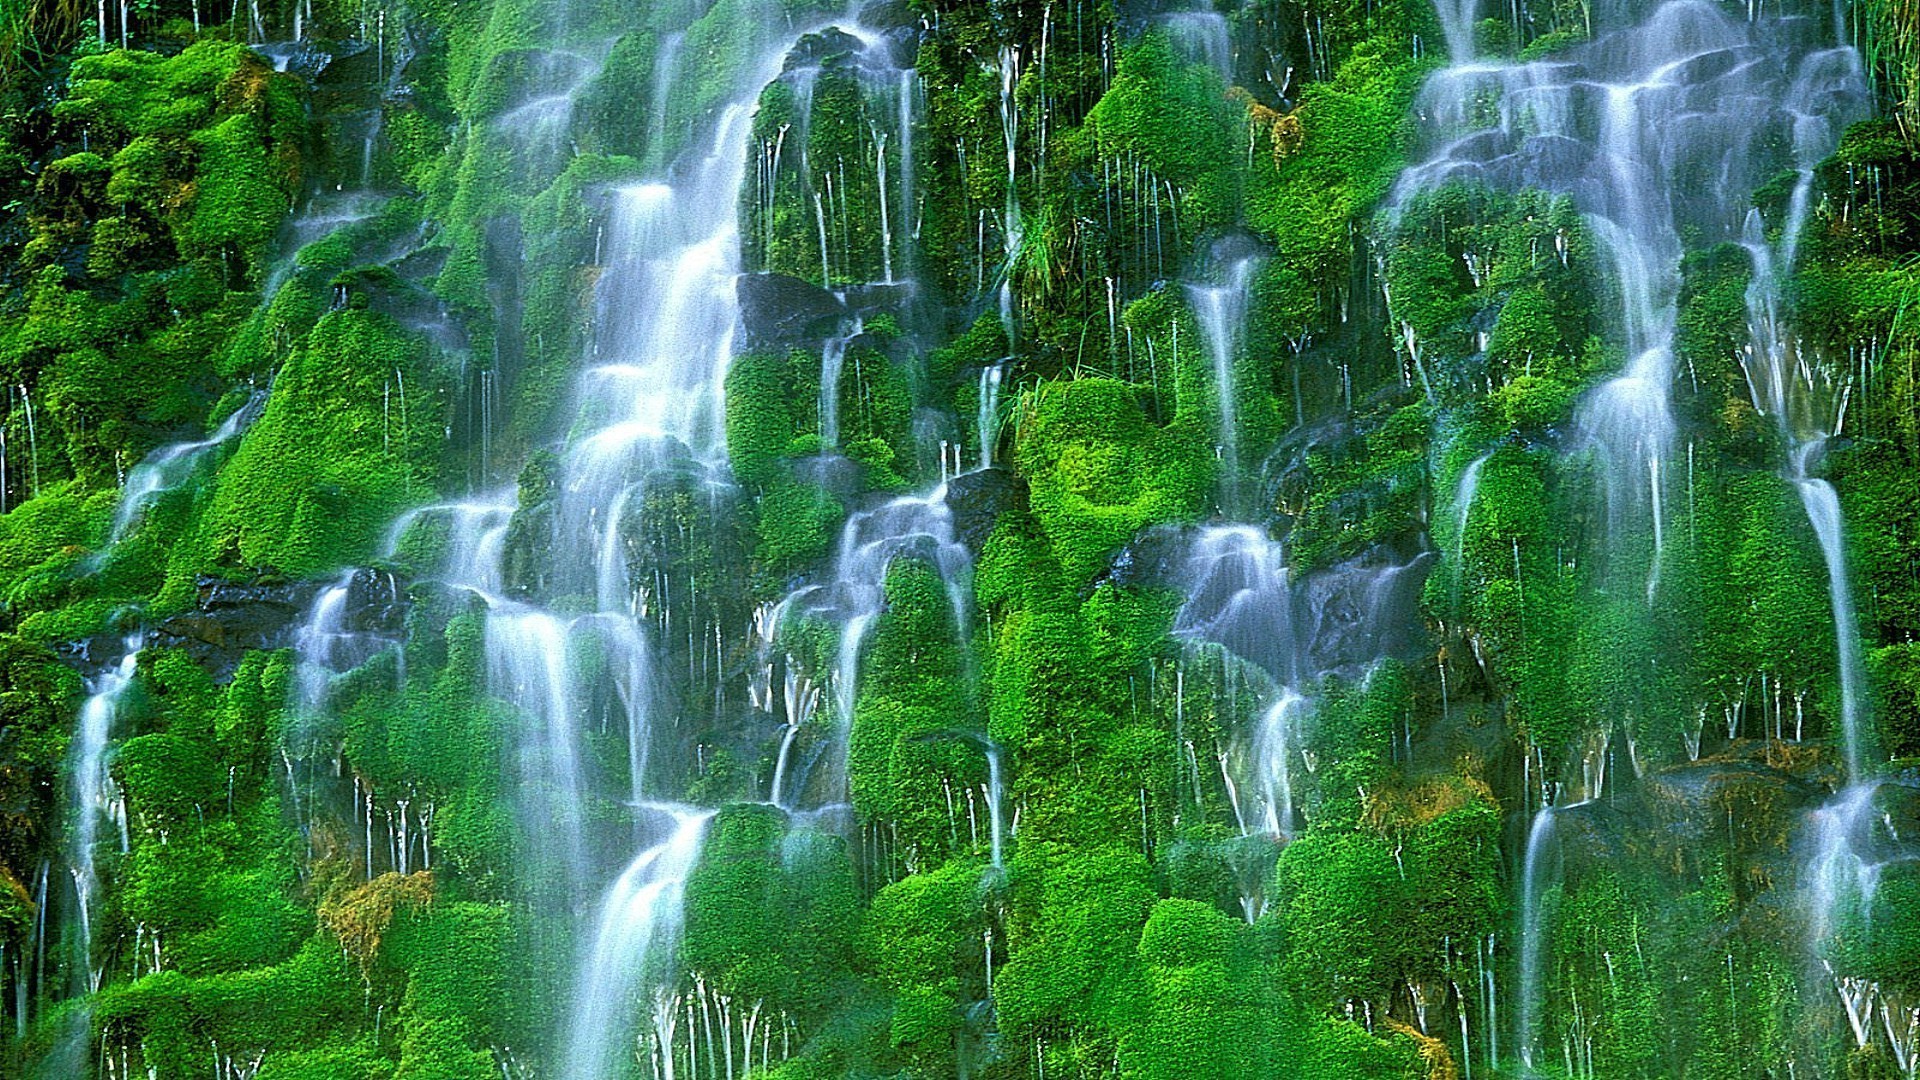 Движущиеся обои на заставку. Водопад Мосбрей, США. Живая природа водопады. Красивые водопады. Живые водопады.